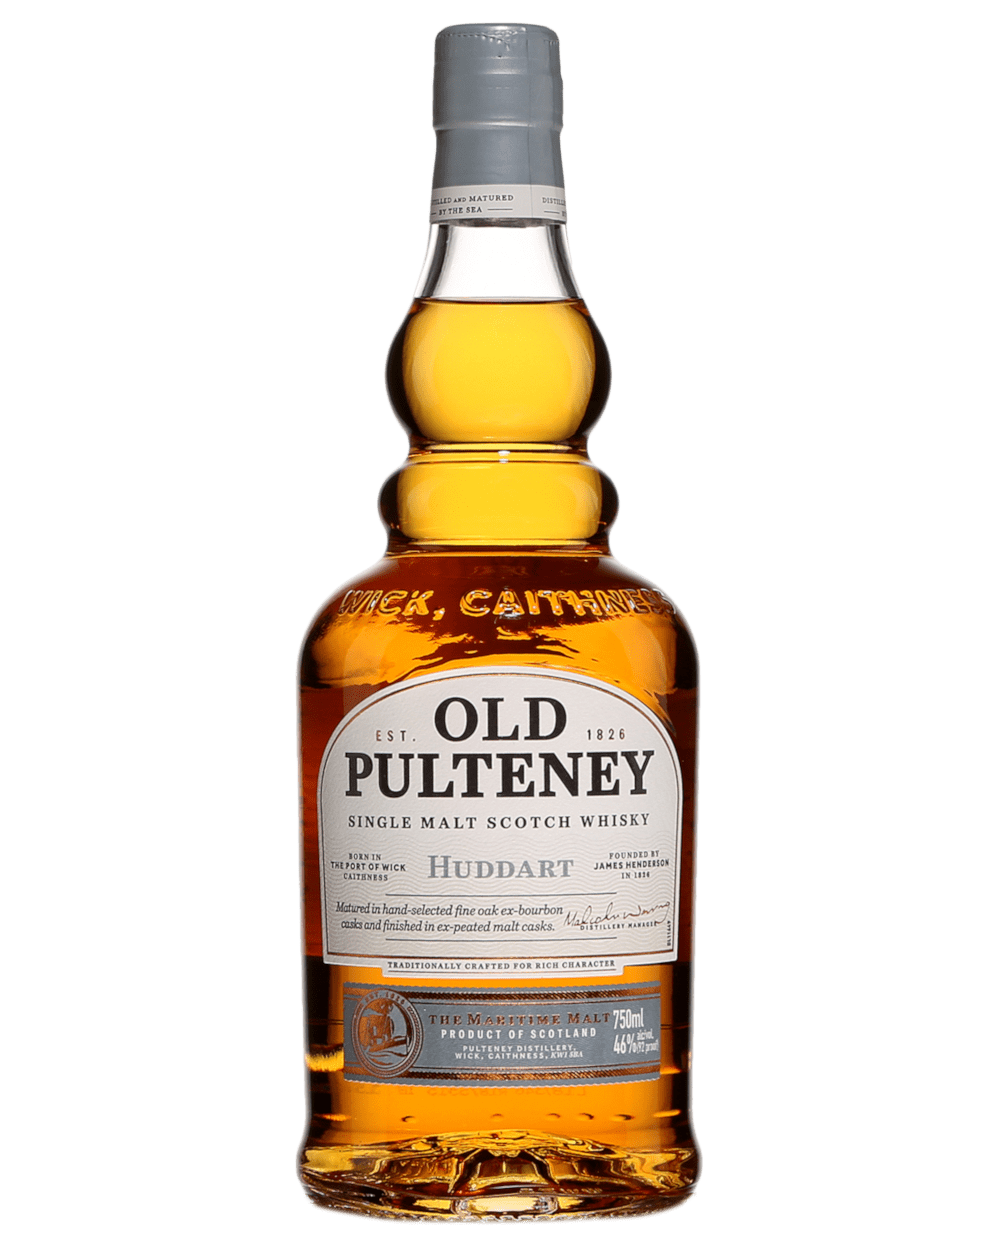 Old Pulteney Huddart Single Malt Scotch Whisky Loot